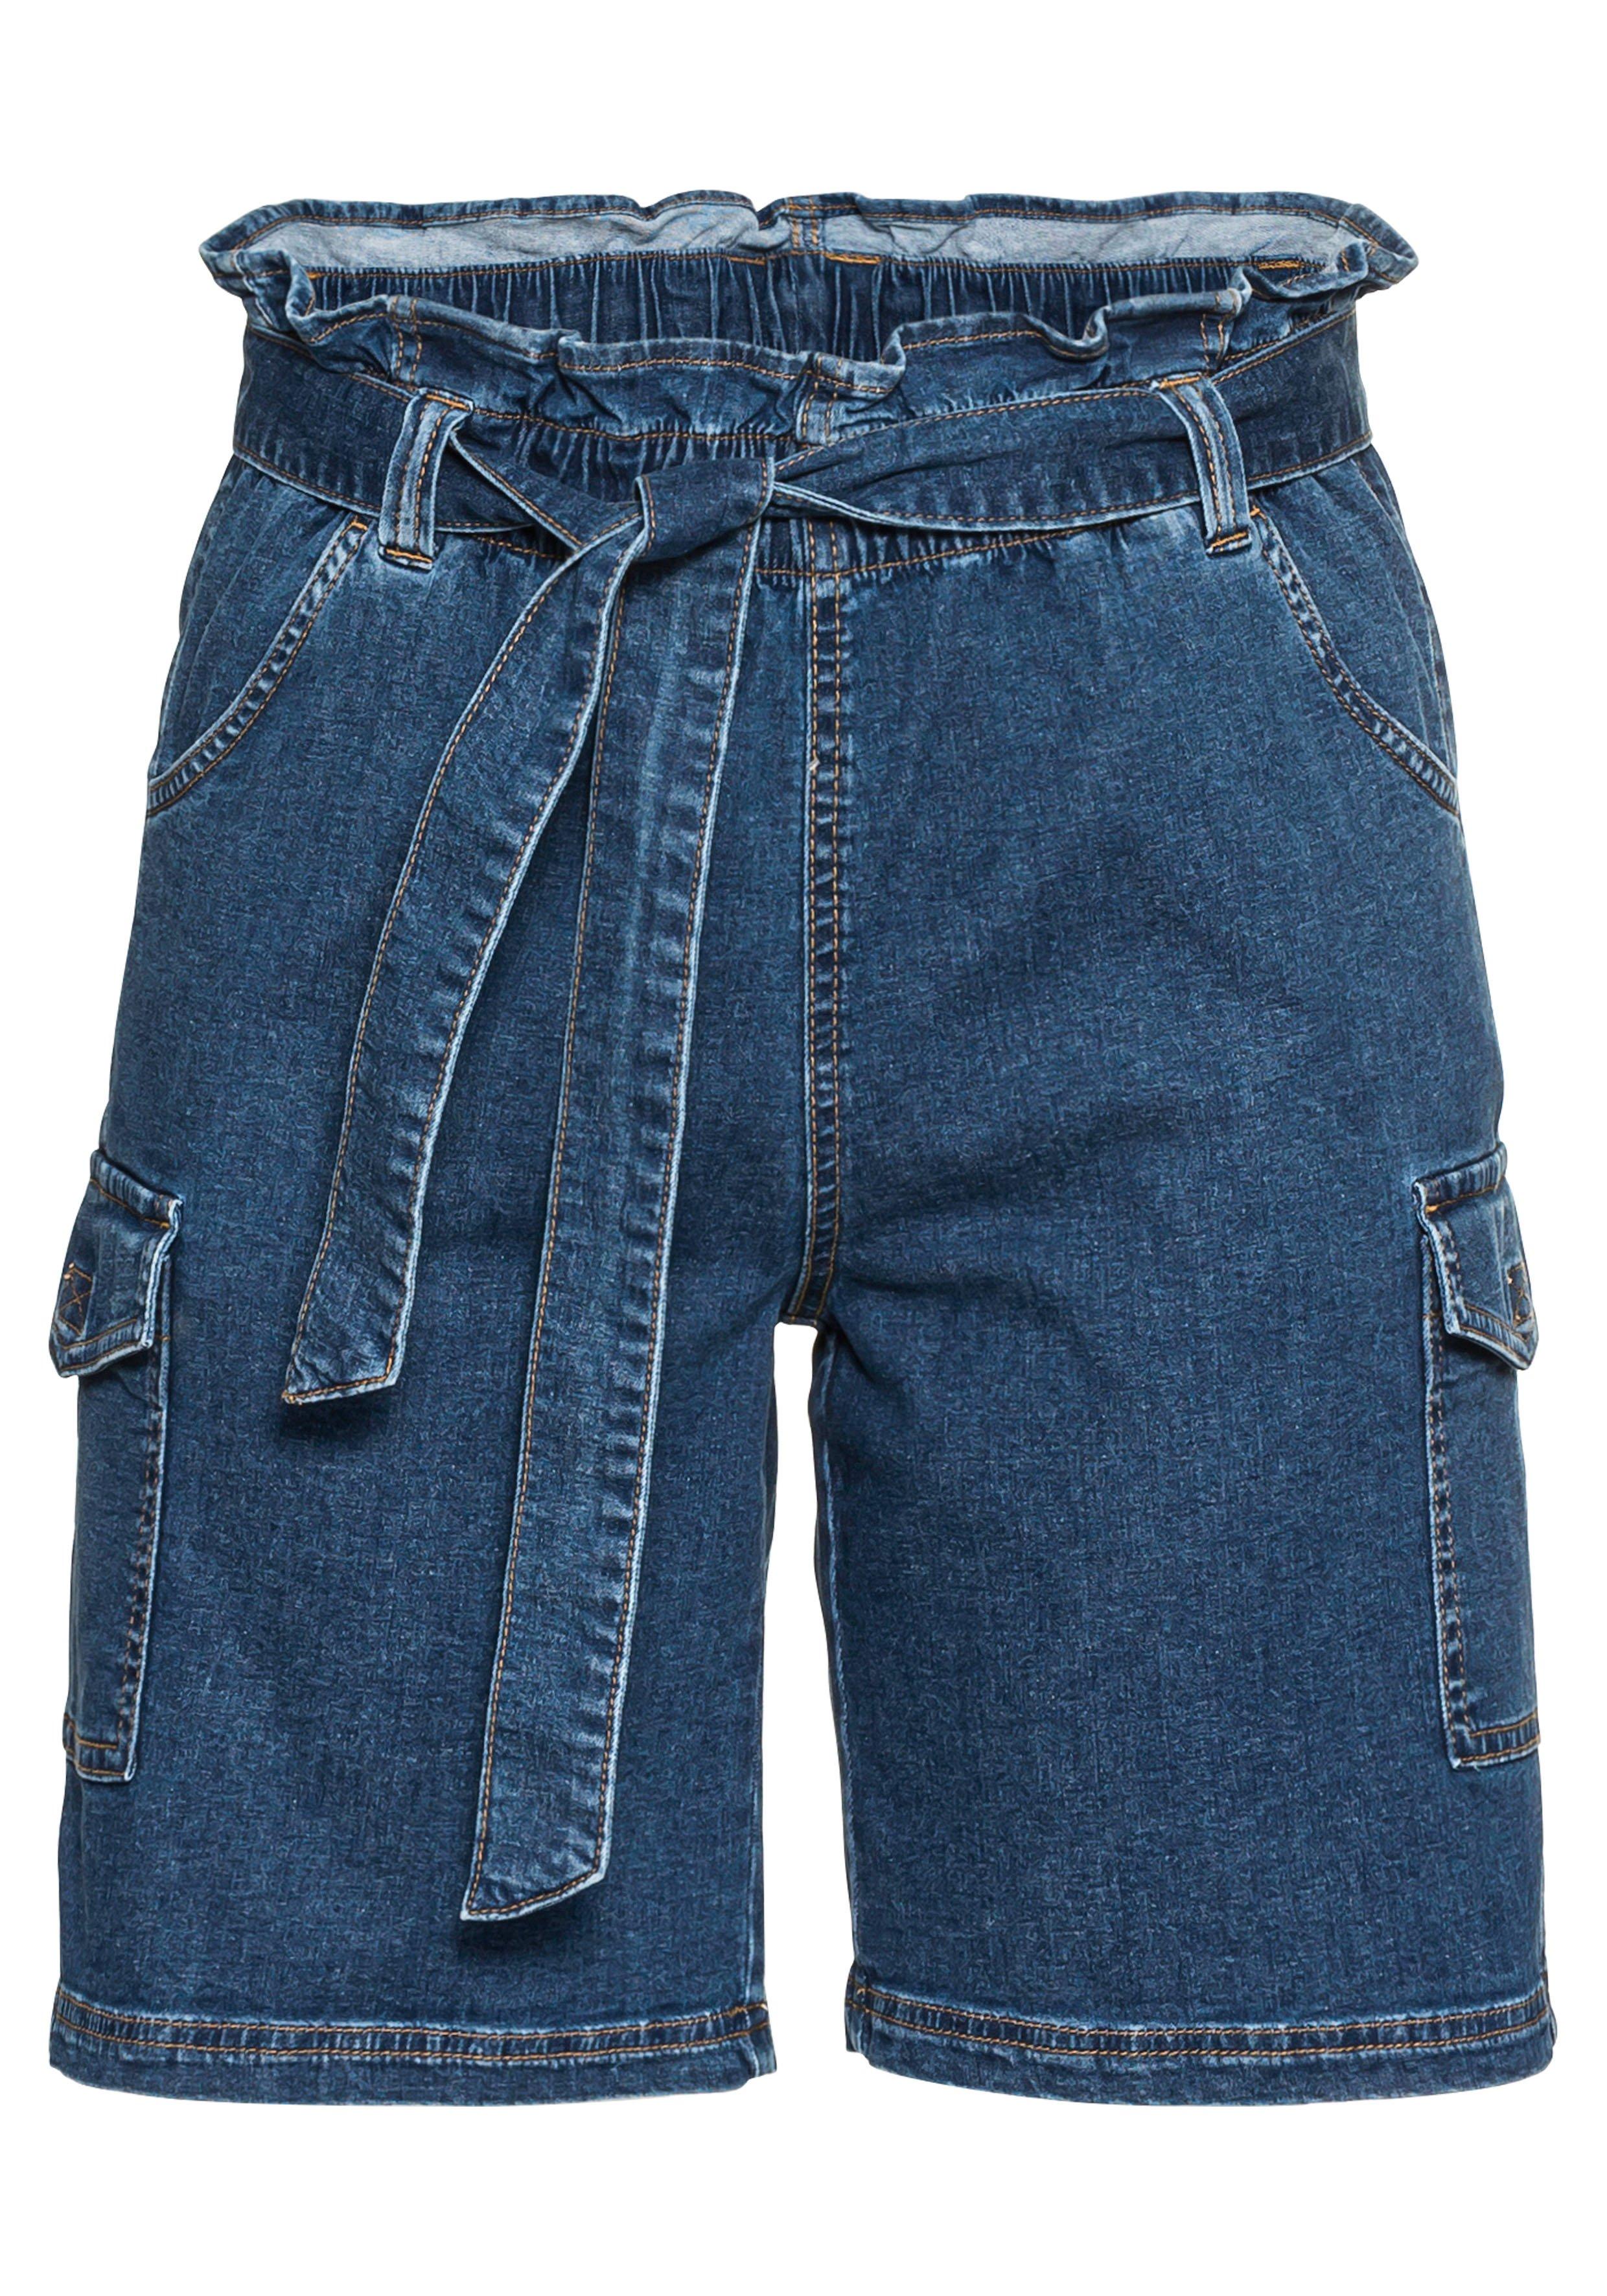 | Jeans-Shorts Denim blue used mit Paperbagbund und Cargotaschen - sheego